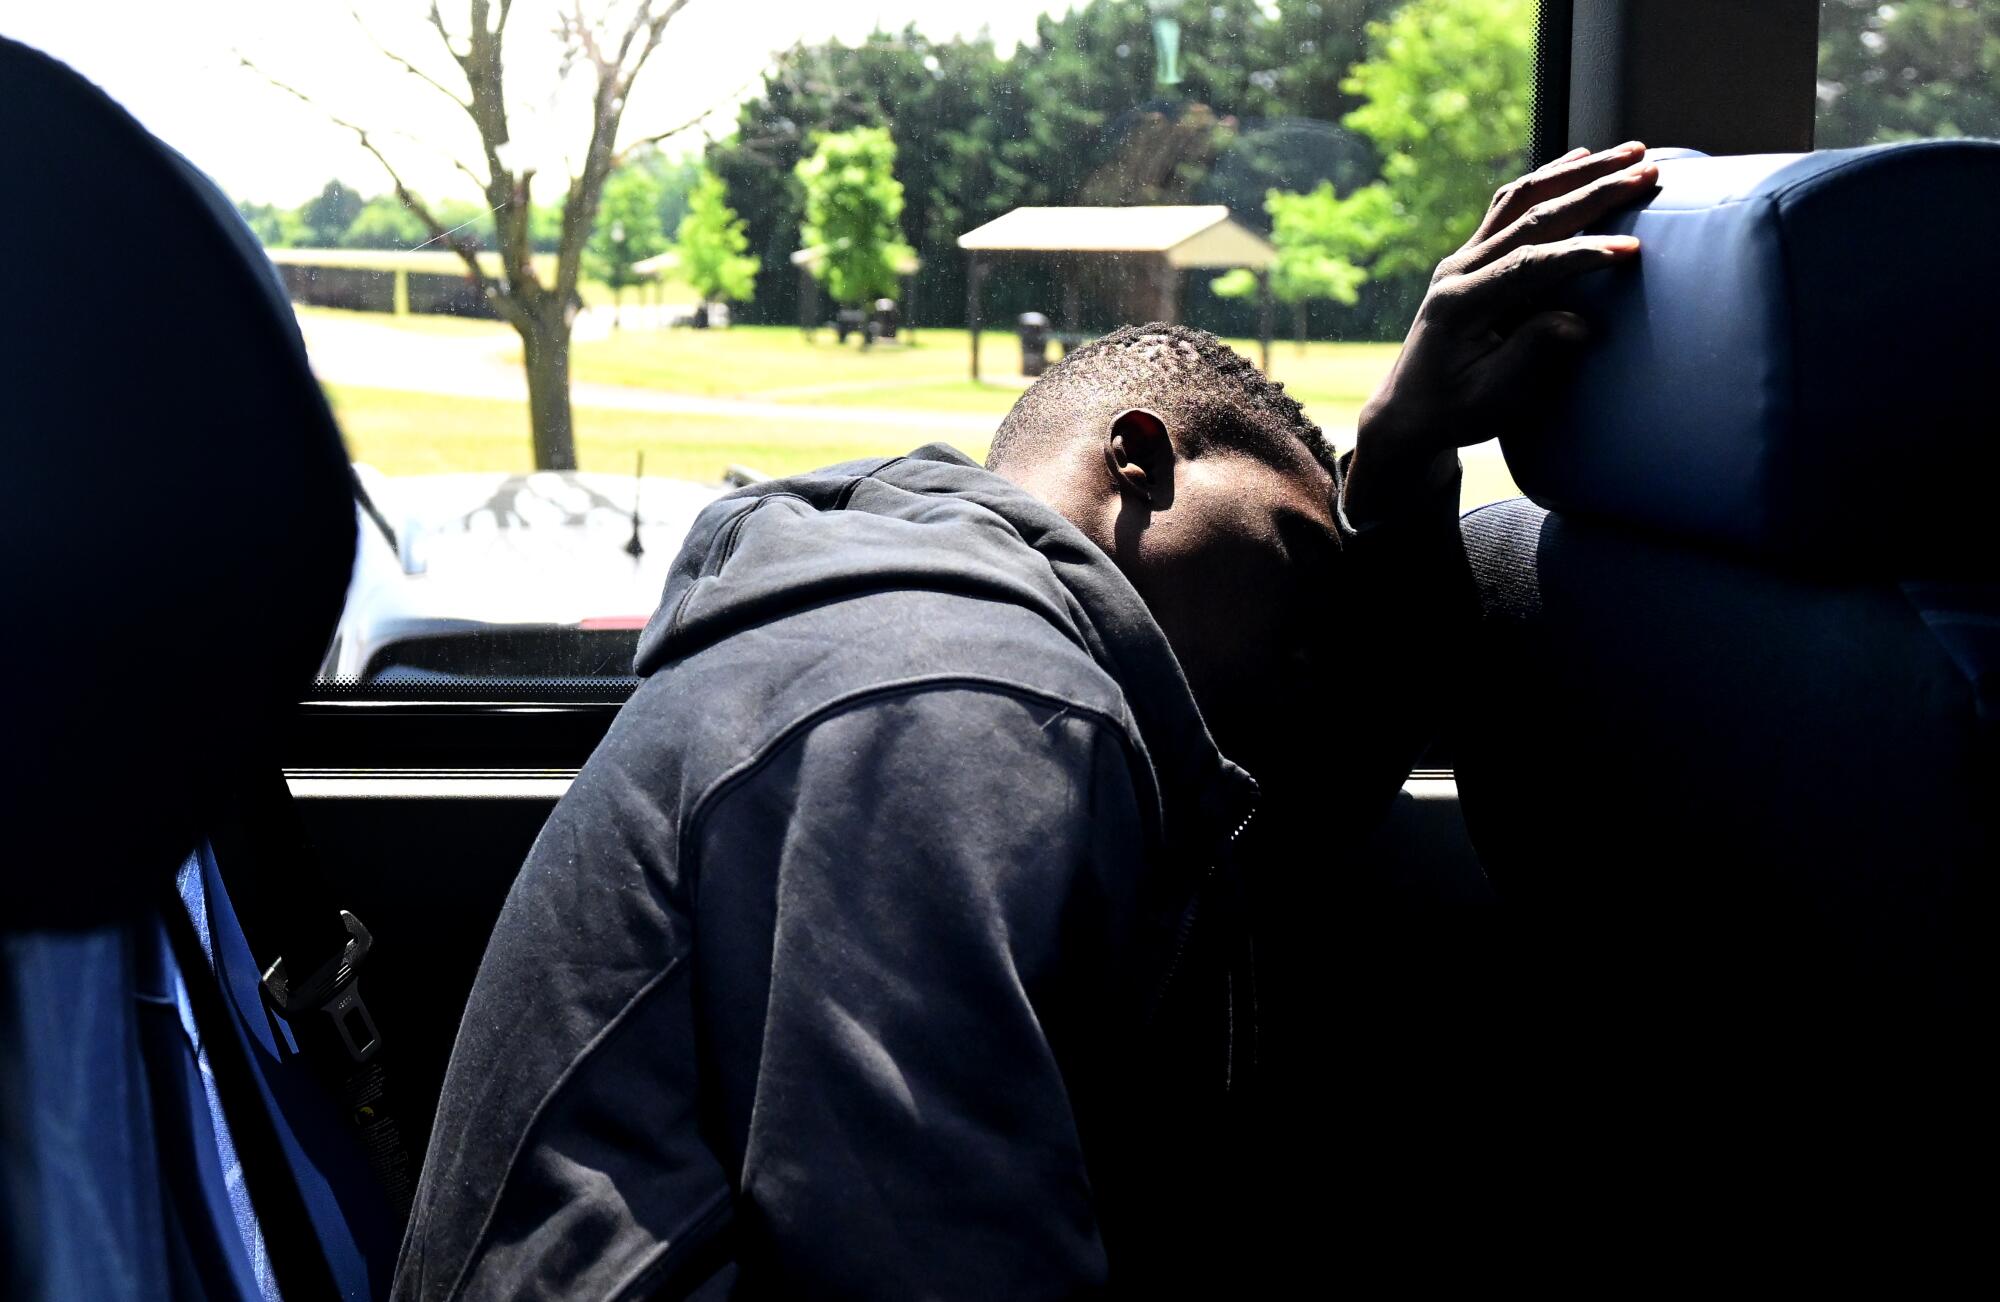 Jet lag geçiren Dennis Kasumba, Frederick, MD.'de Trenton, NJ'ye giden bir otobüste uyumaya çalışıyor